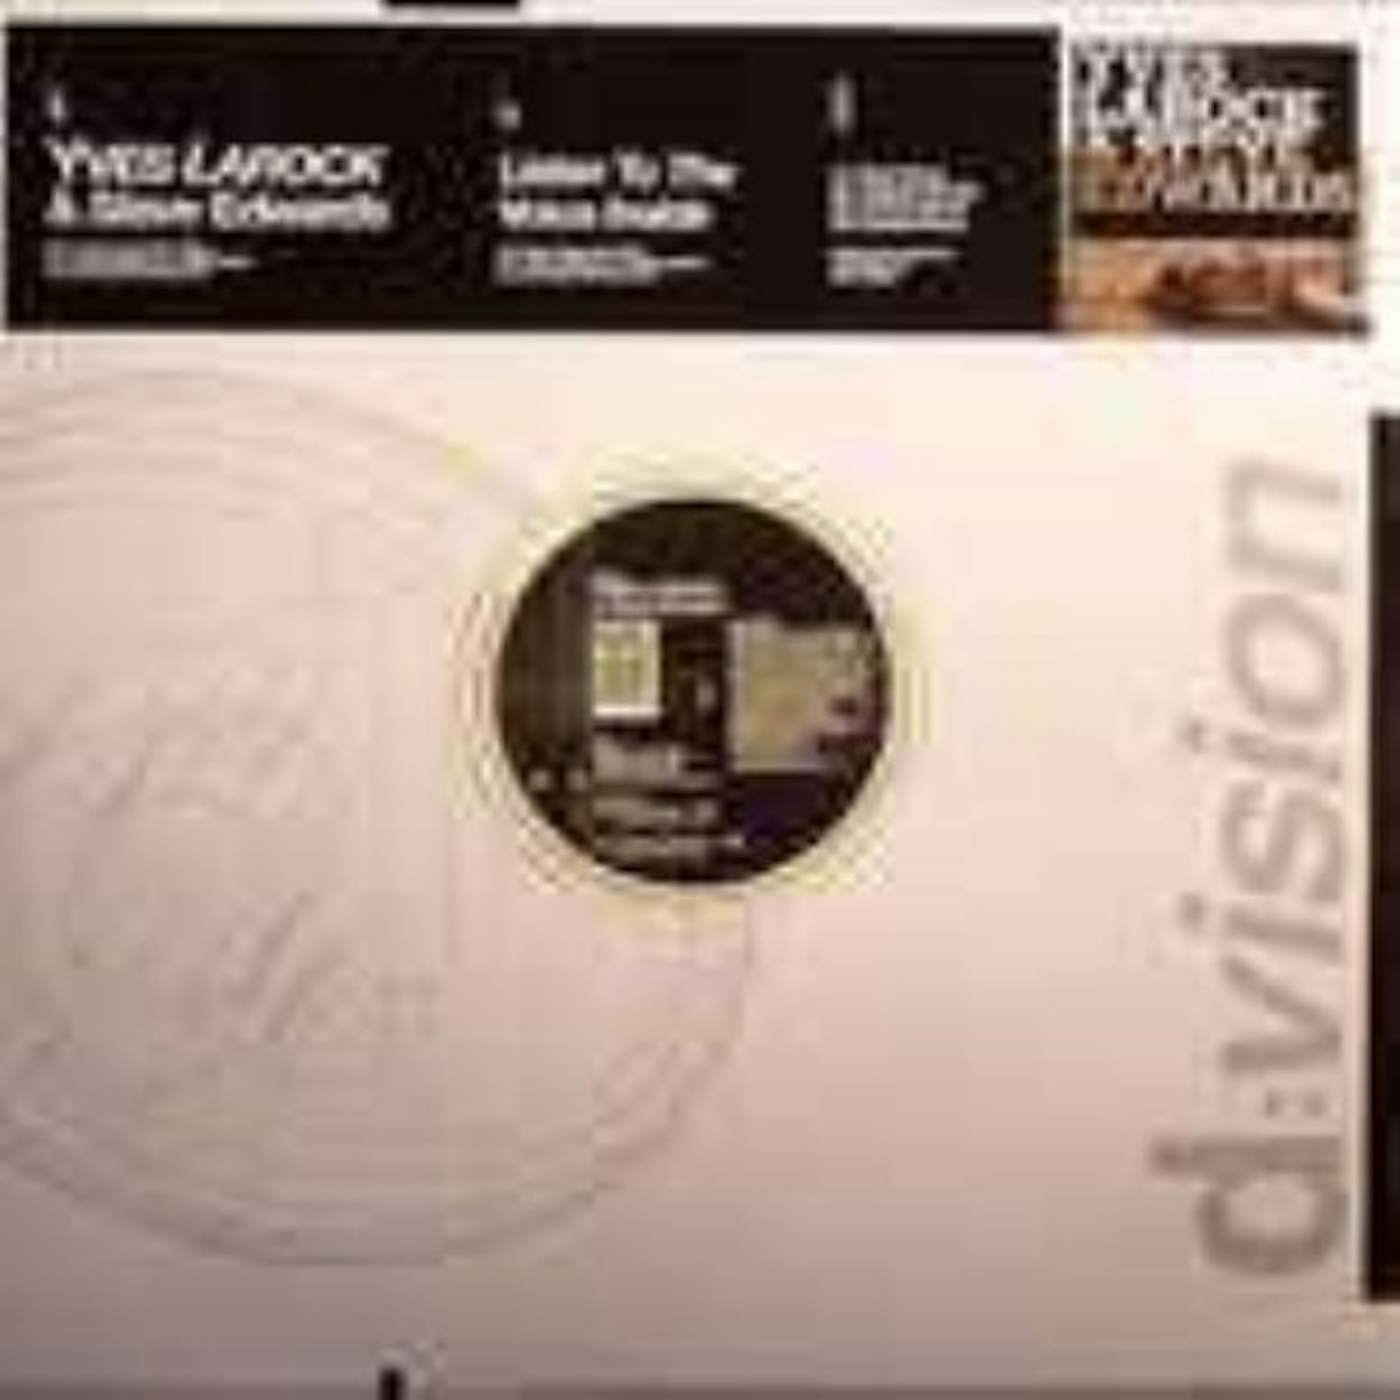 Yves Larock & Steve Edwards LISTEN THE VOICE INSIDE Vinyl Record